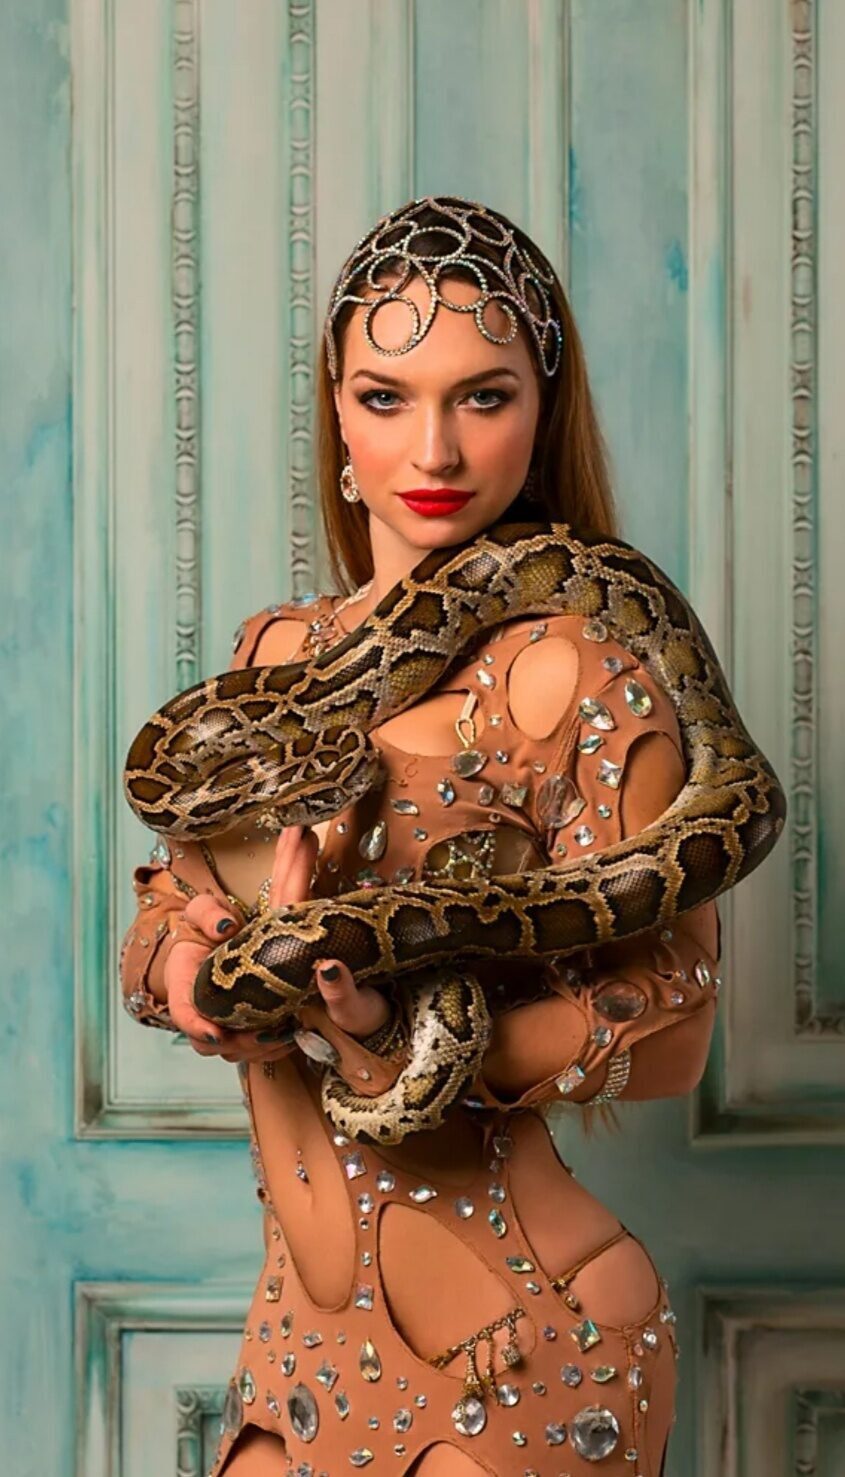 Фотосессия со змеями